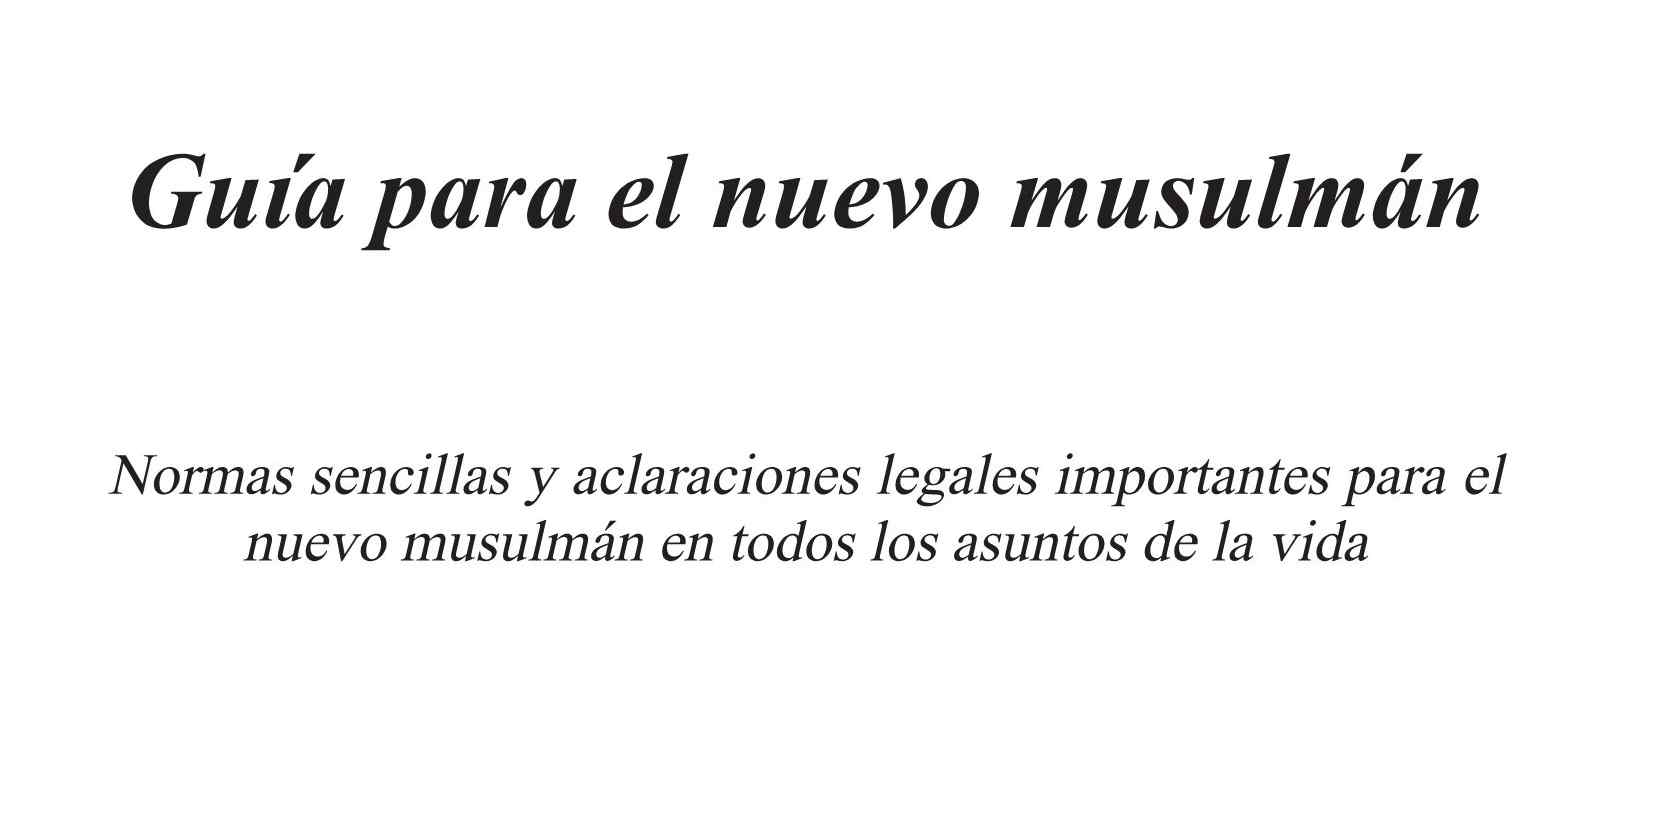 إسباني  دليل المسلم الجديد  Guía para el nuevo musulmán.pdf, 258-Sayfa 